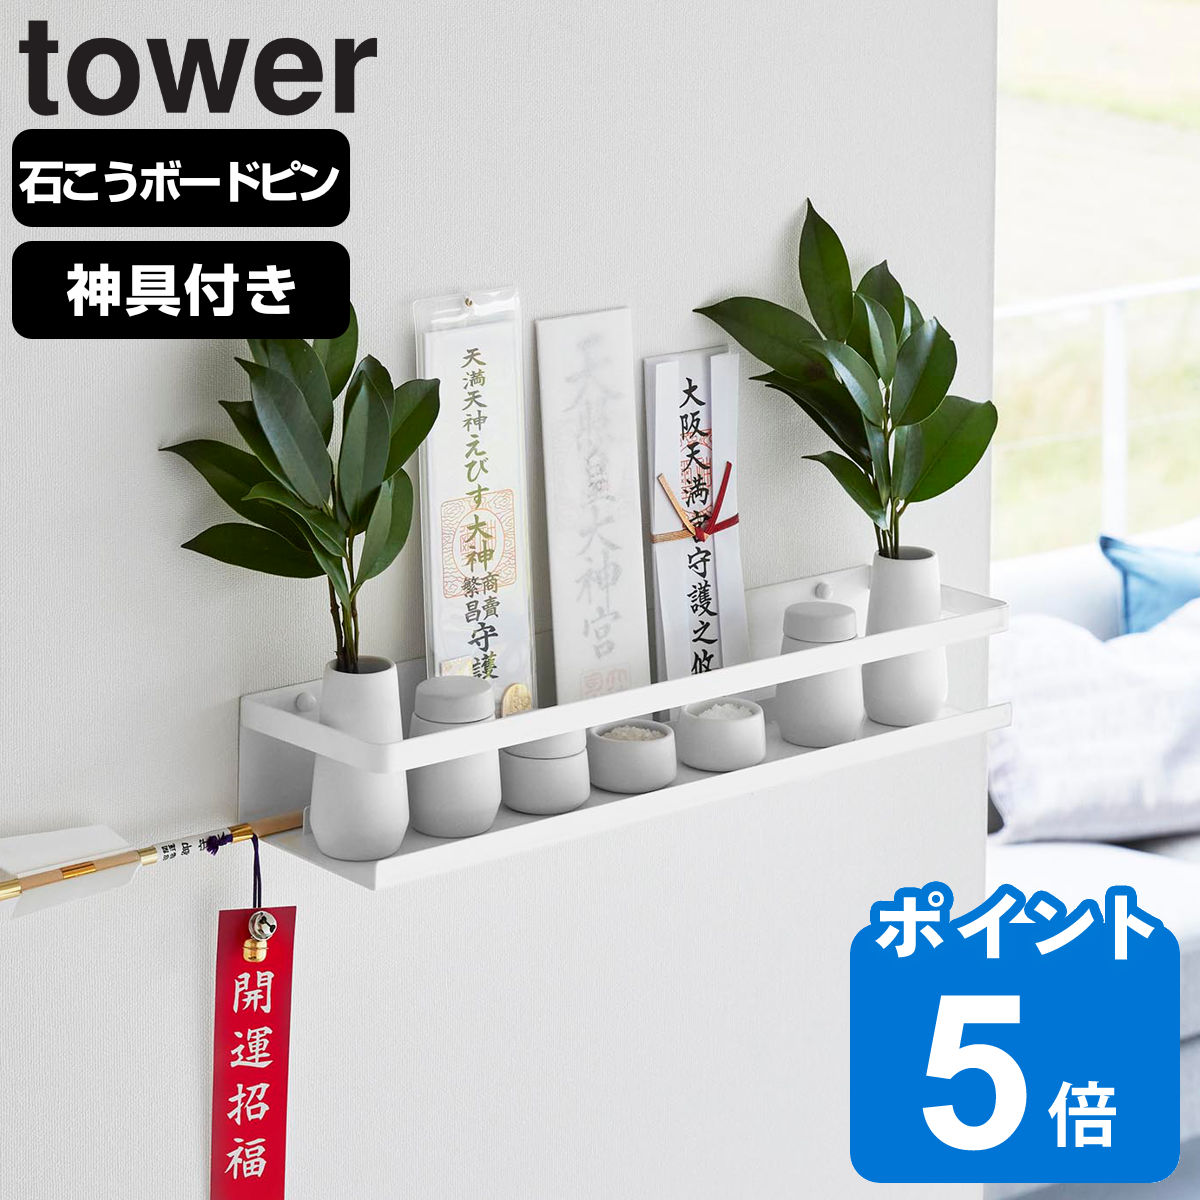 山崎実業 tower 石こうボード壁対応神棚 タワー 神具セット ホワイト